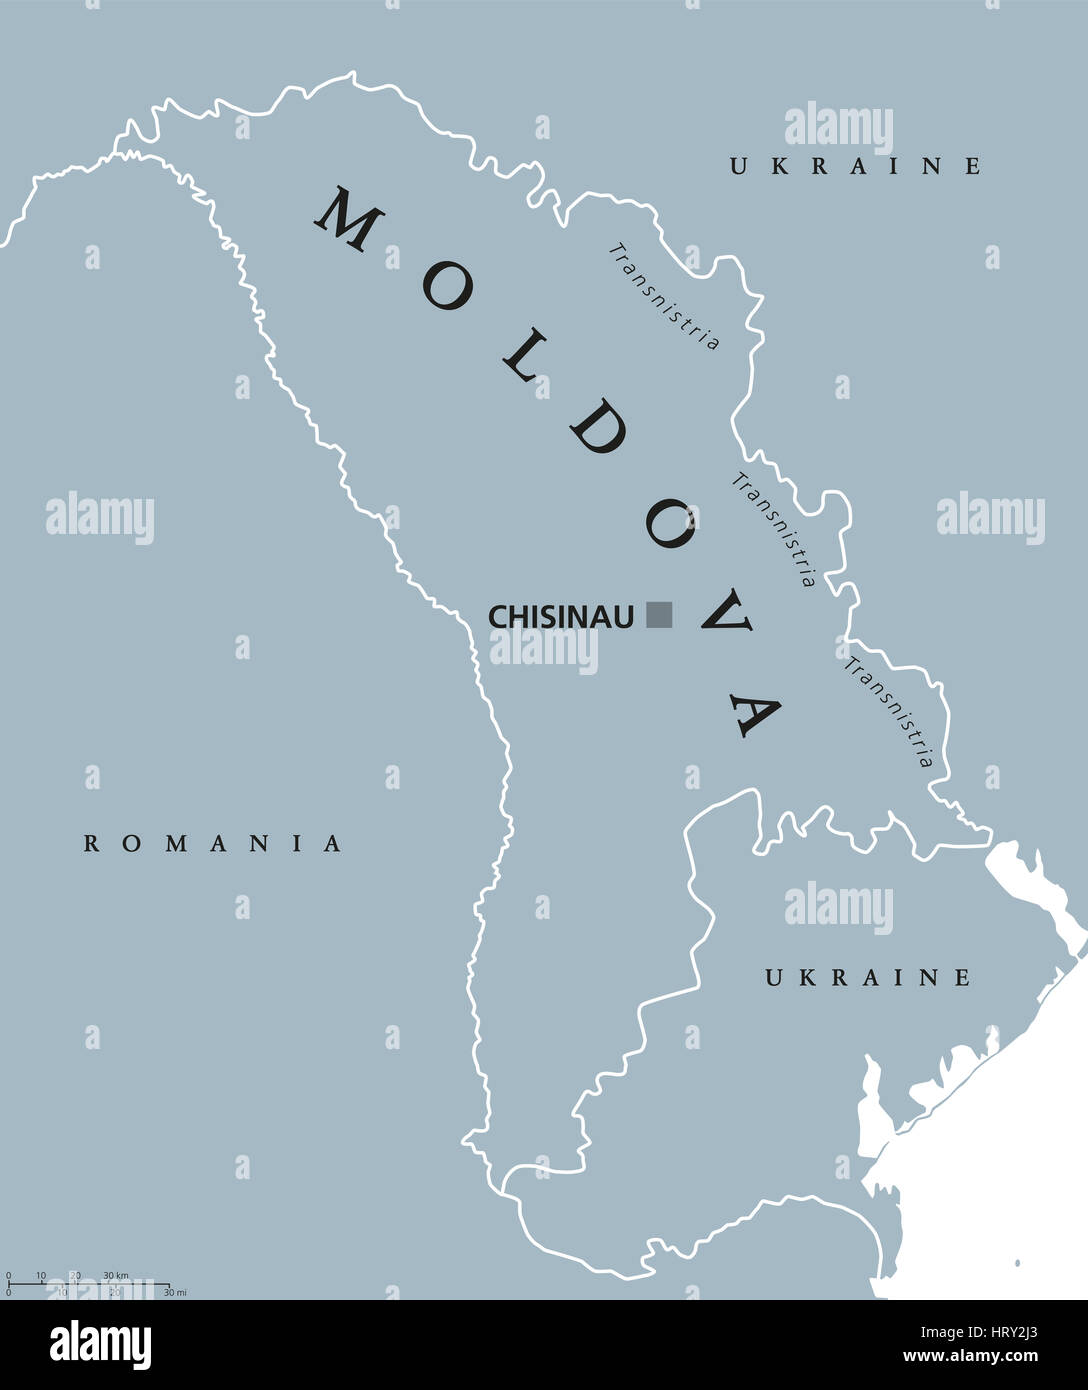 La Moldavia mappa politico con capitale Chisinau, Transnistria i confini nazionali e i paesi vicini. Anche la Moldavia, Repubblica senza sbocco sul mare in Europa Orientale. Foto Stock